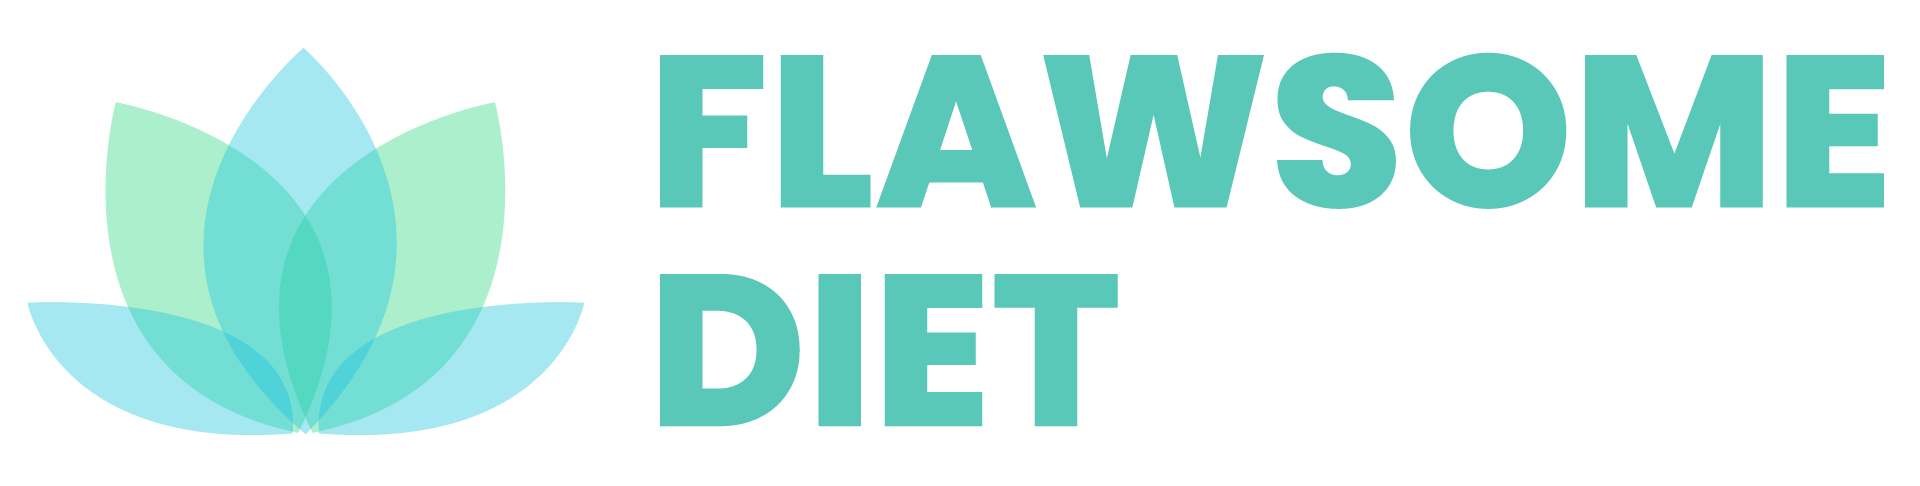 Flawsome diet